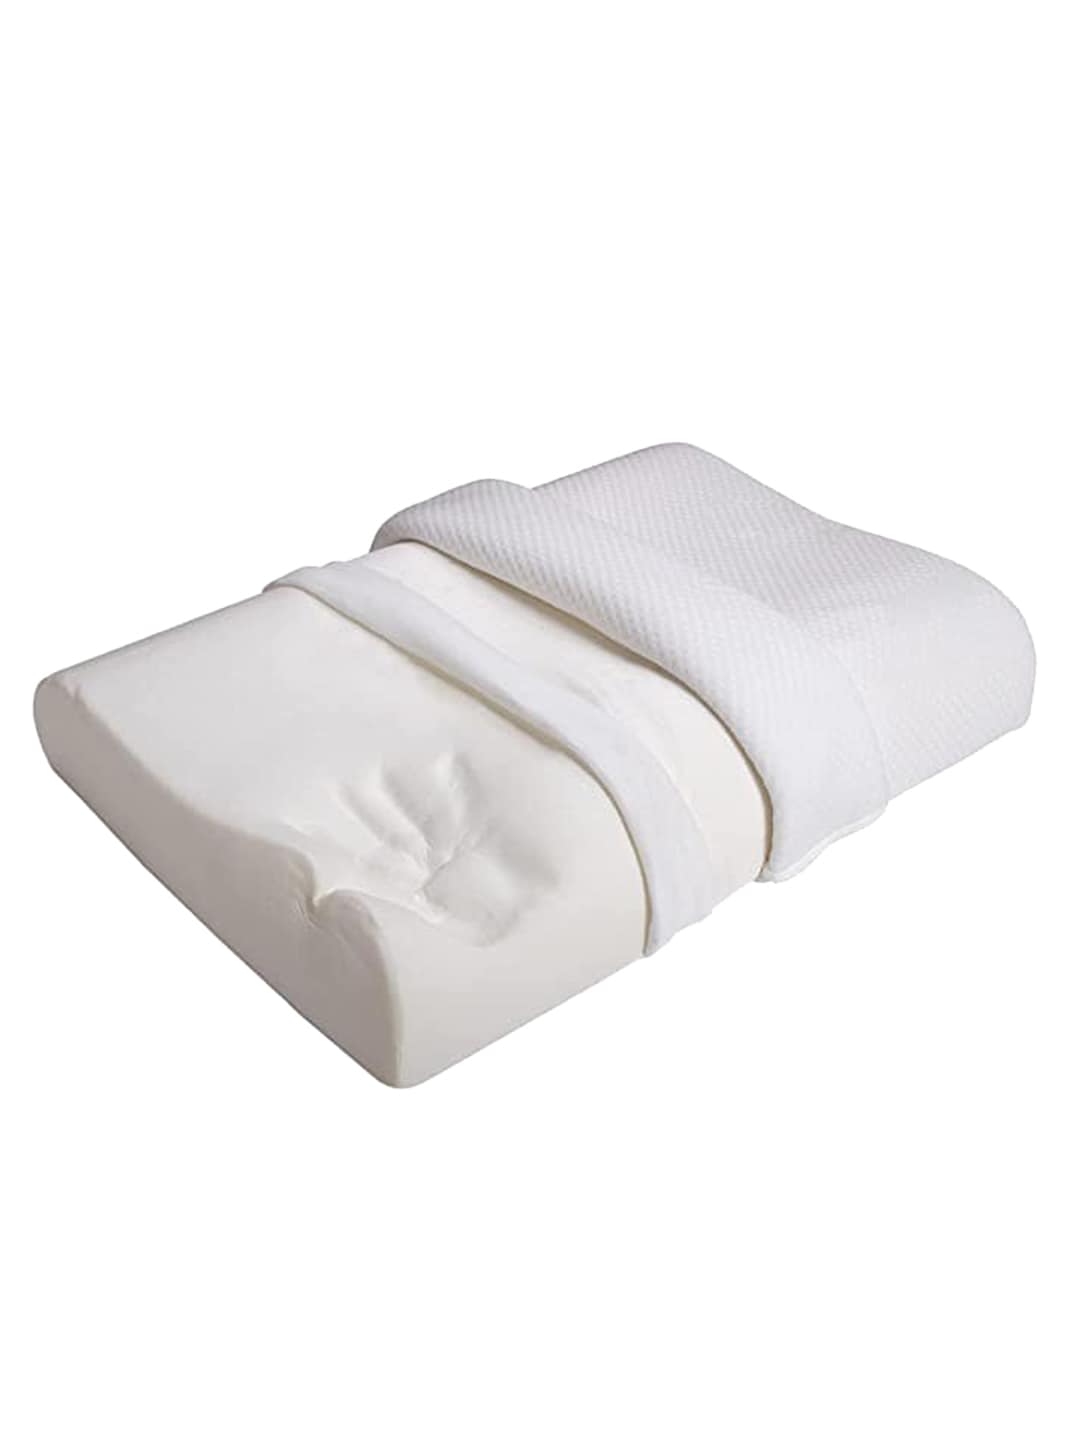 Sleepsia  White Solid Cotton Therapedic Pillows Price in India